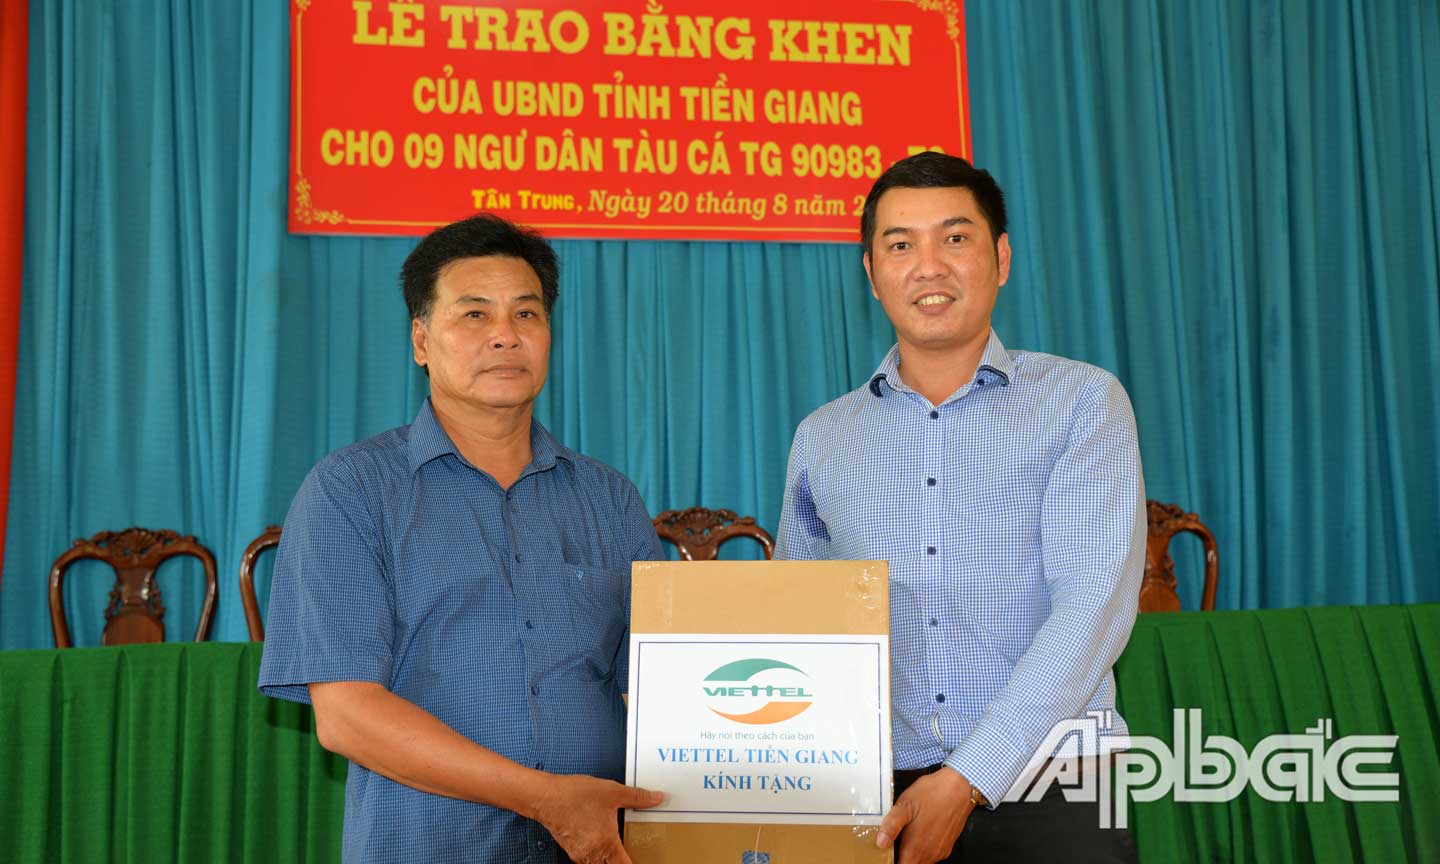 Đại diện Viettel Tiền Giang trao máy thiết bị giám sát hành trình tàu cá cho ông Ngô Văn Thẻng.